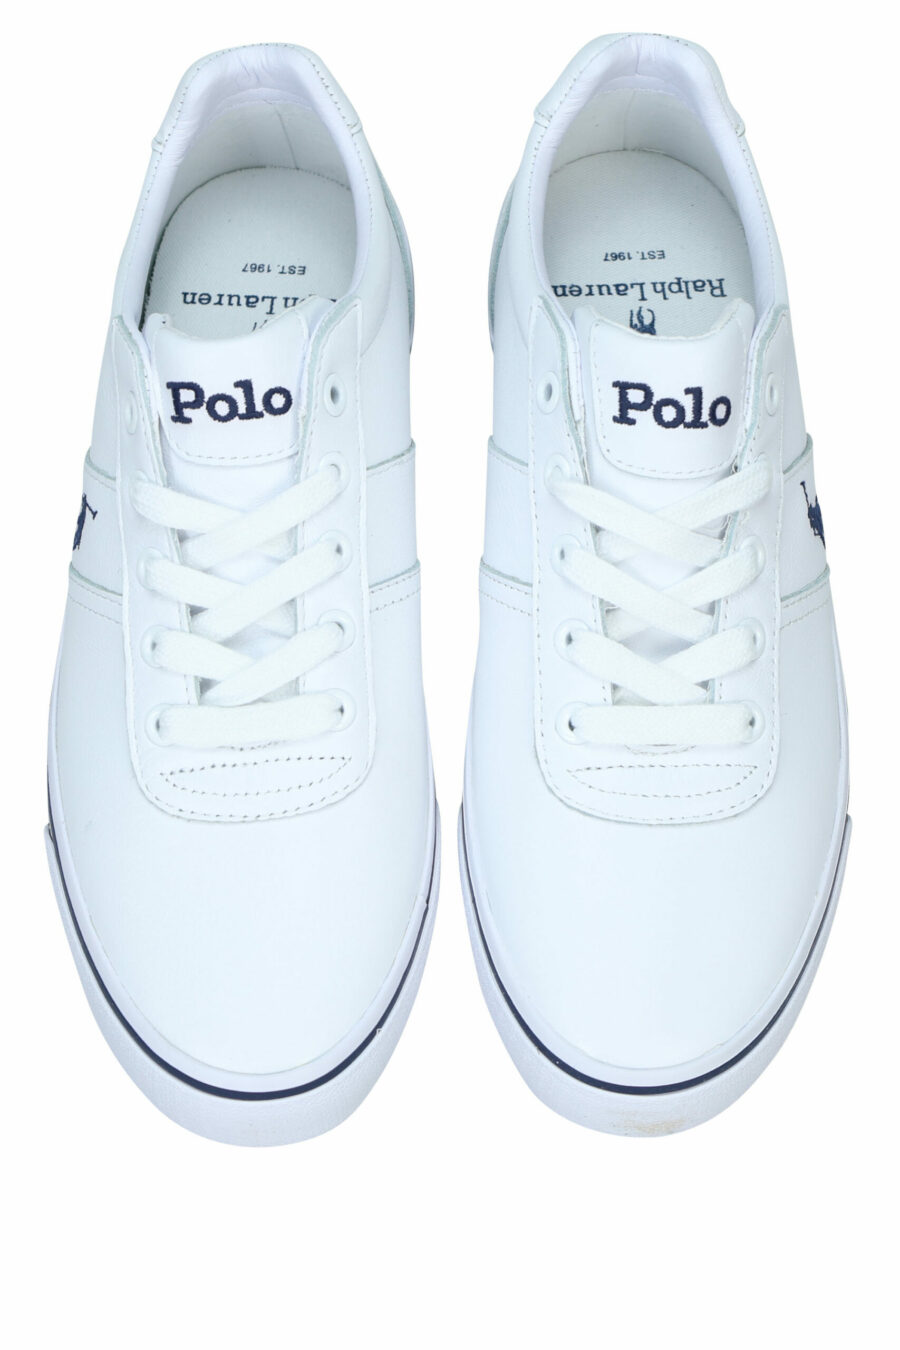 Baskets blanches avec détails bleus et logo "polo" - 3615737560351 4 scaled